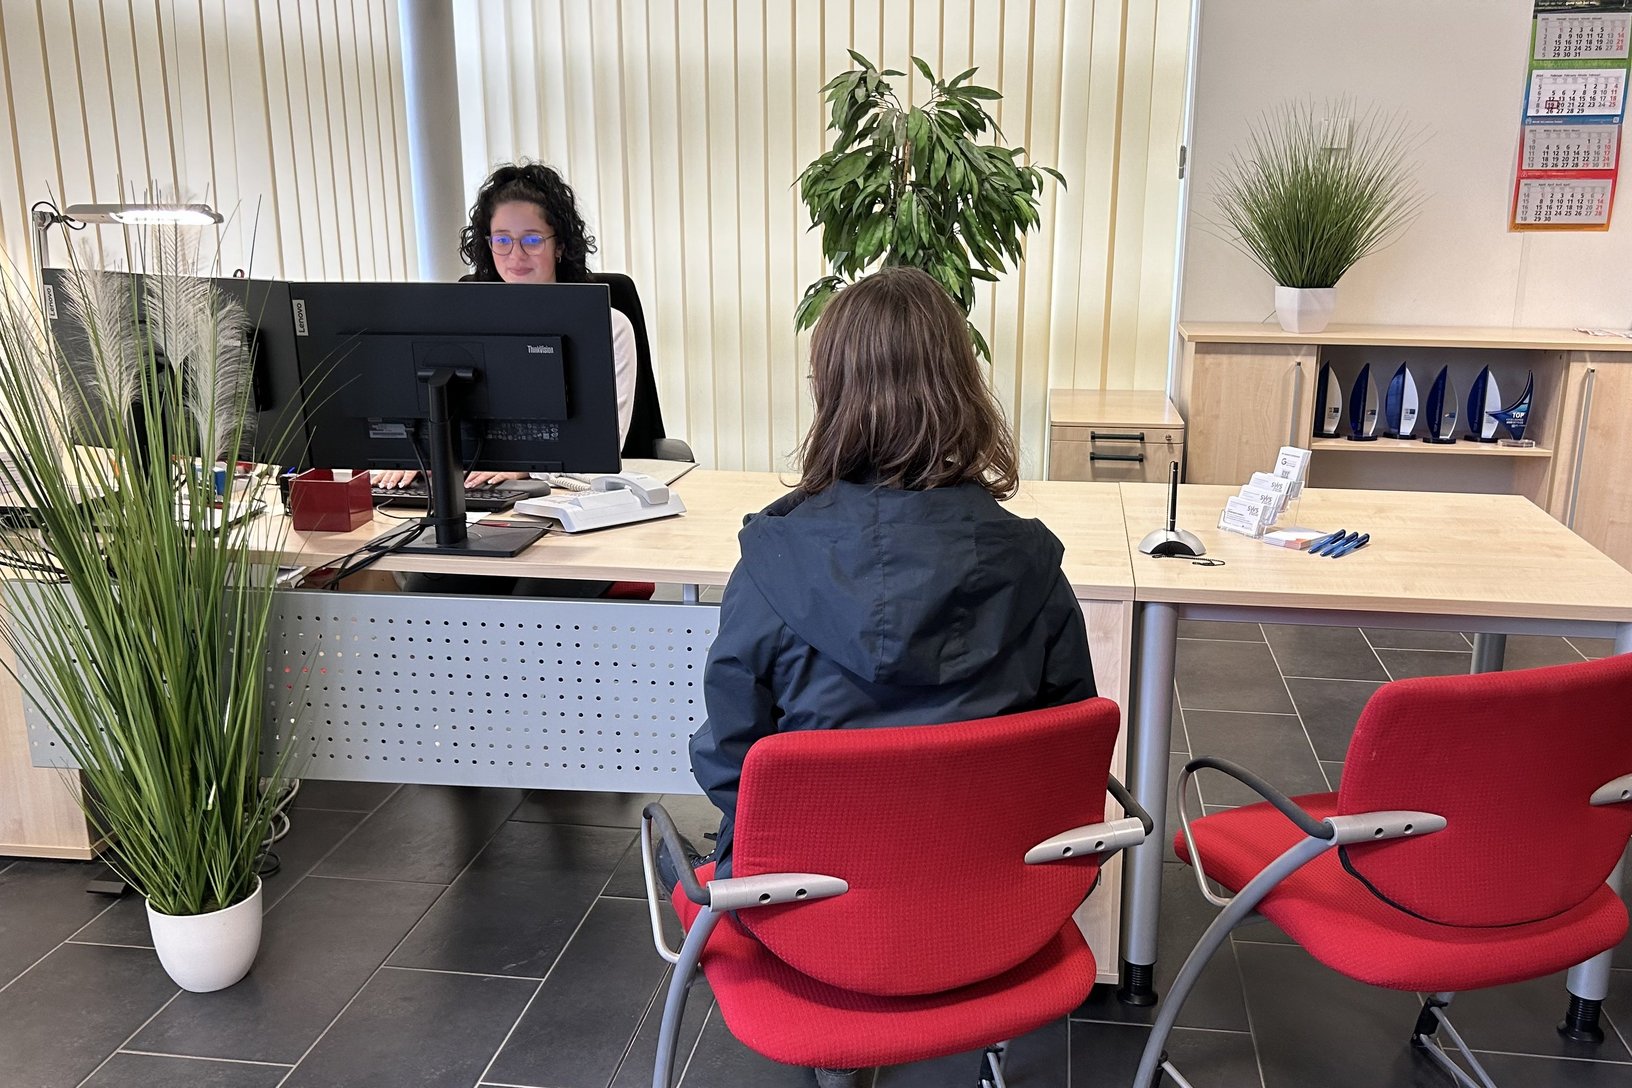 Eine Person wartet im Vordergrund auf einem roten Stuhl in einem Büro, während eine Angestellte hinter einem Computerbildschirm arbeitet, umgeben von Pflanzen und Büromaterialien.